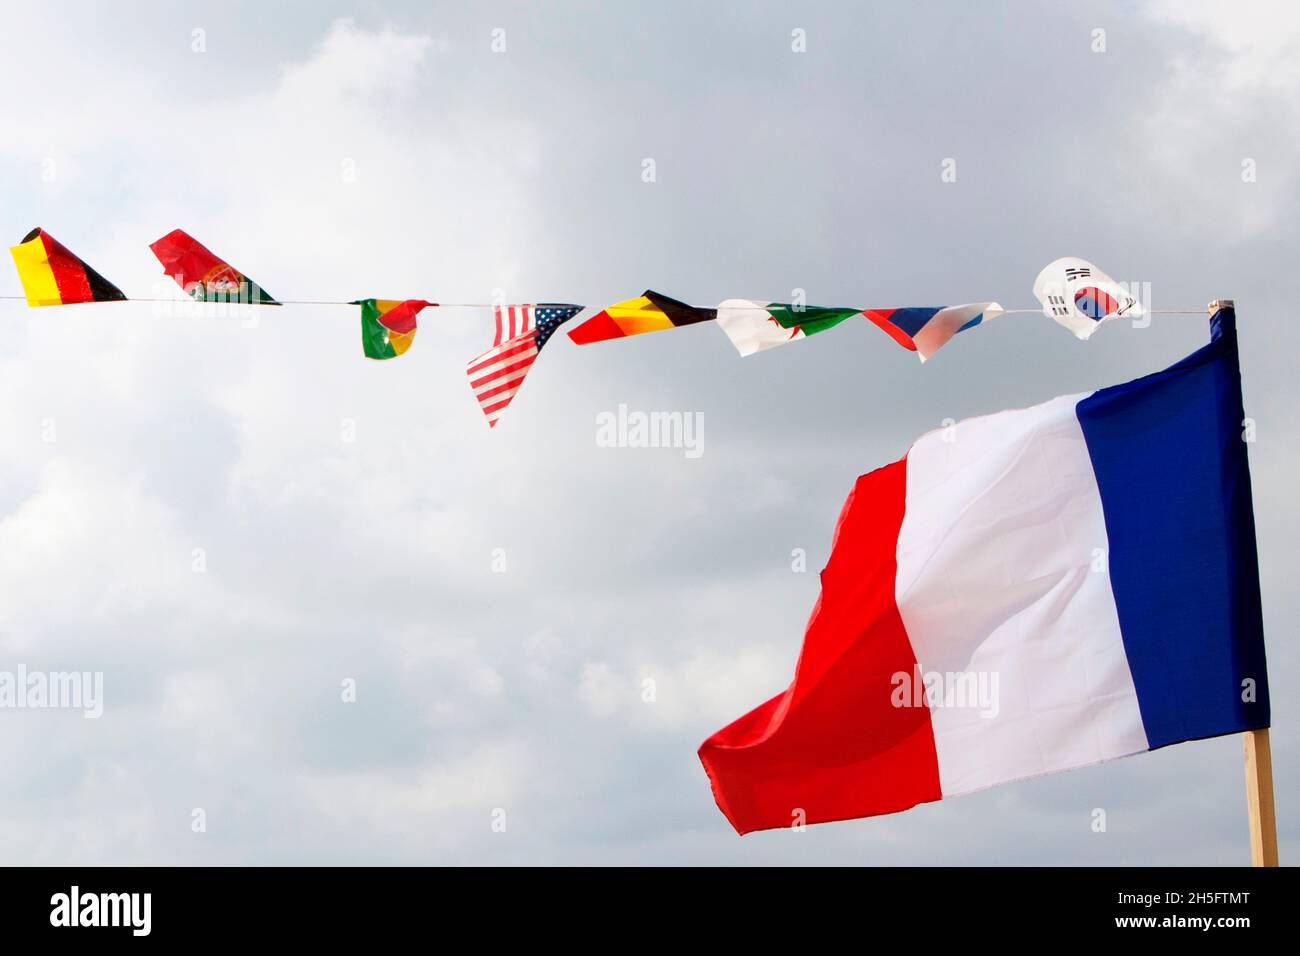 Französische Flagge im Vordergrund sowie weitere kleine Flaggen diverser Nationen wie USA, Deutschland, Südkorea, etc., Nizza, Frankreich. Foto de stock